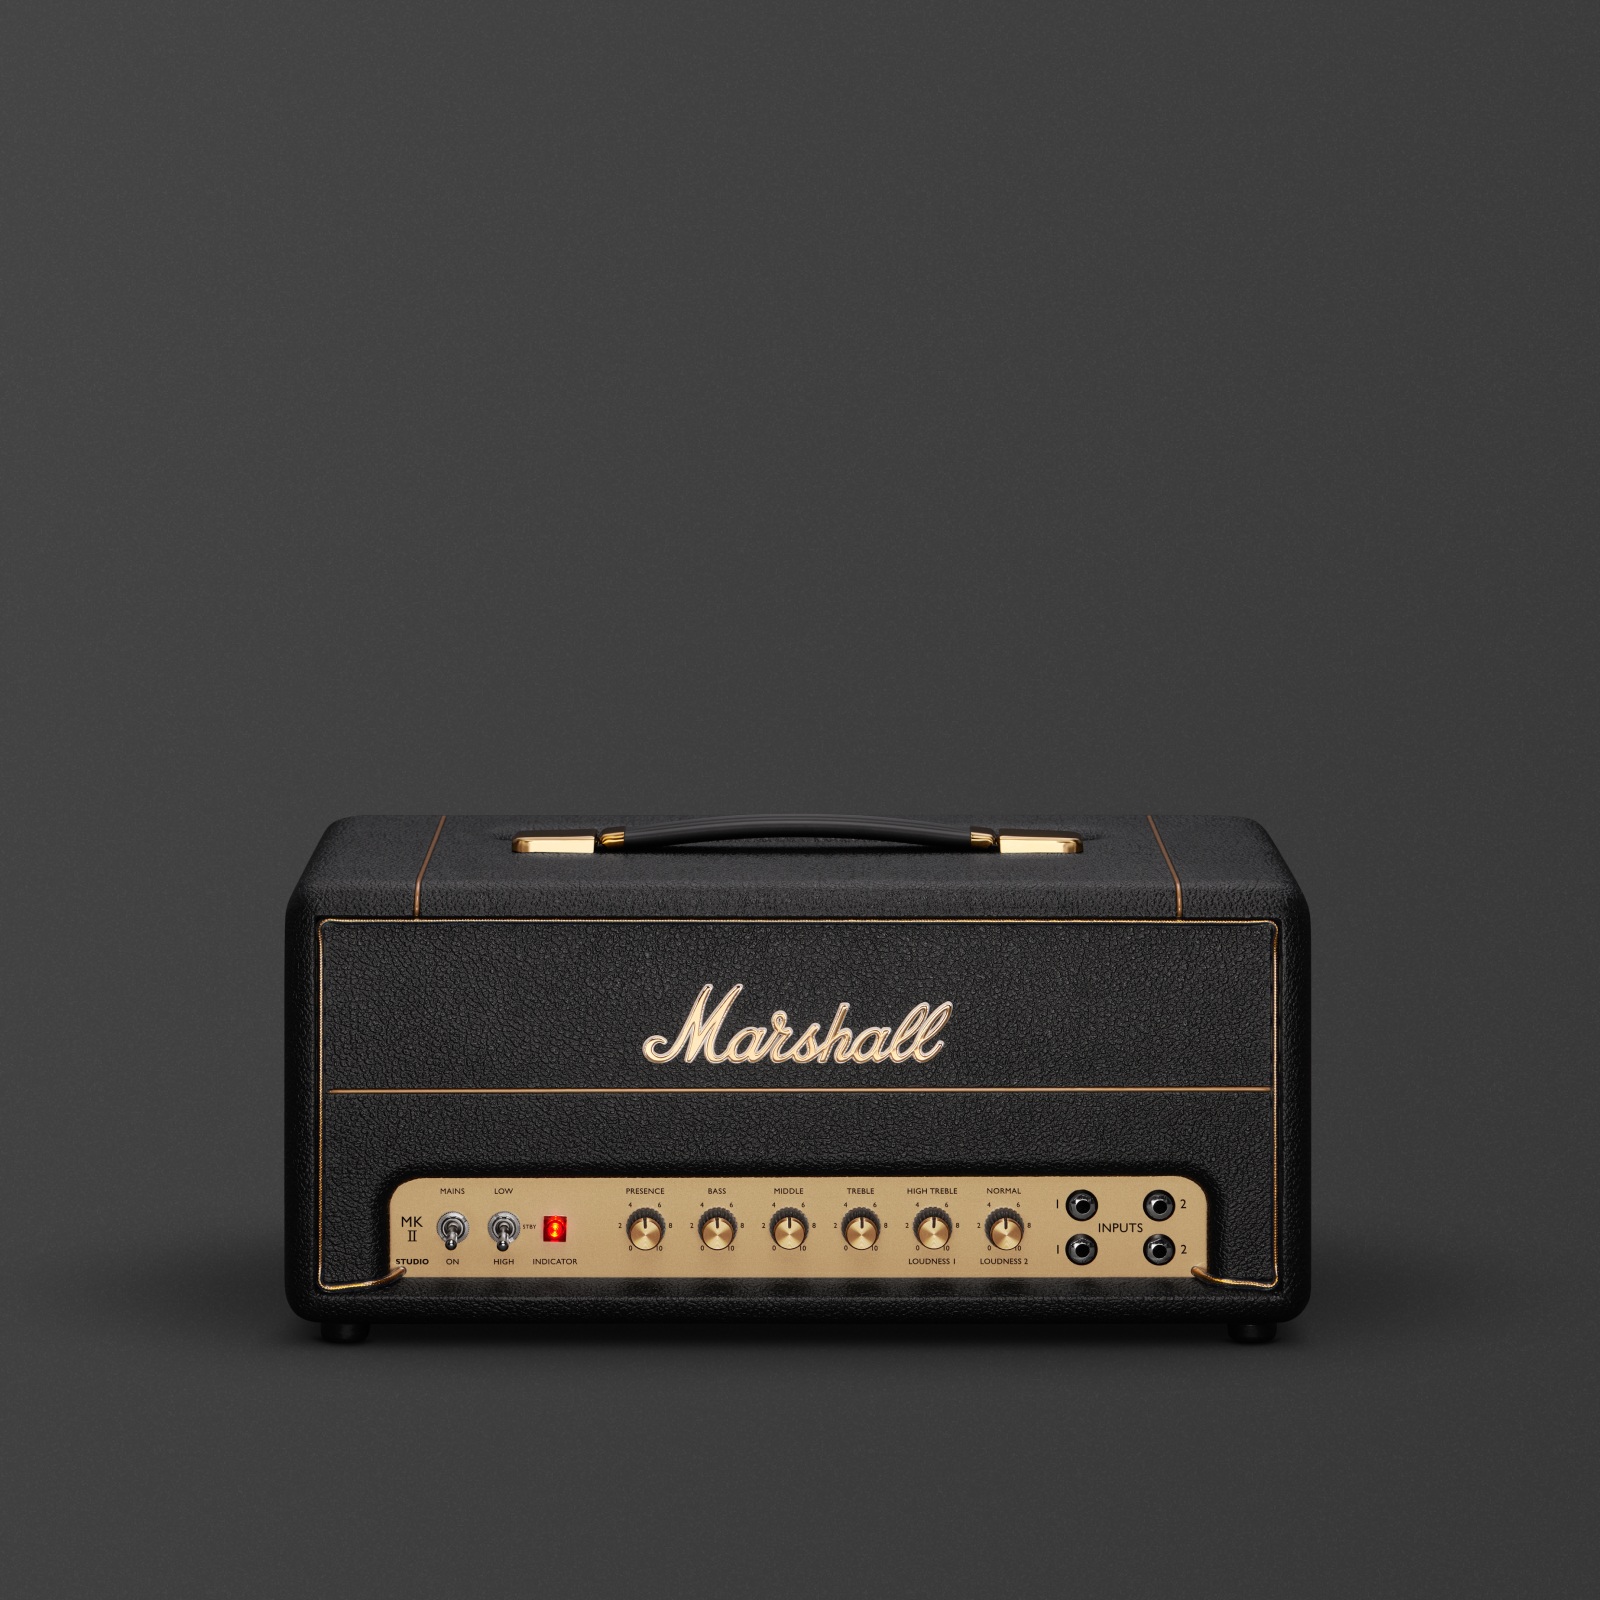 The Marshall Studio Vintage Head amplifier. 